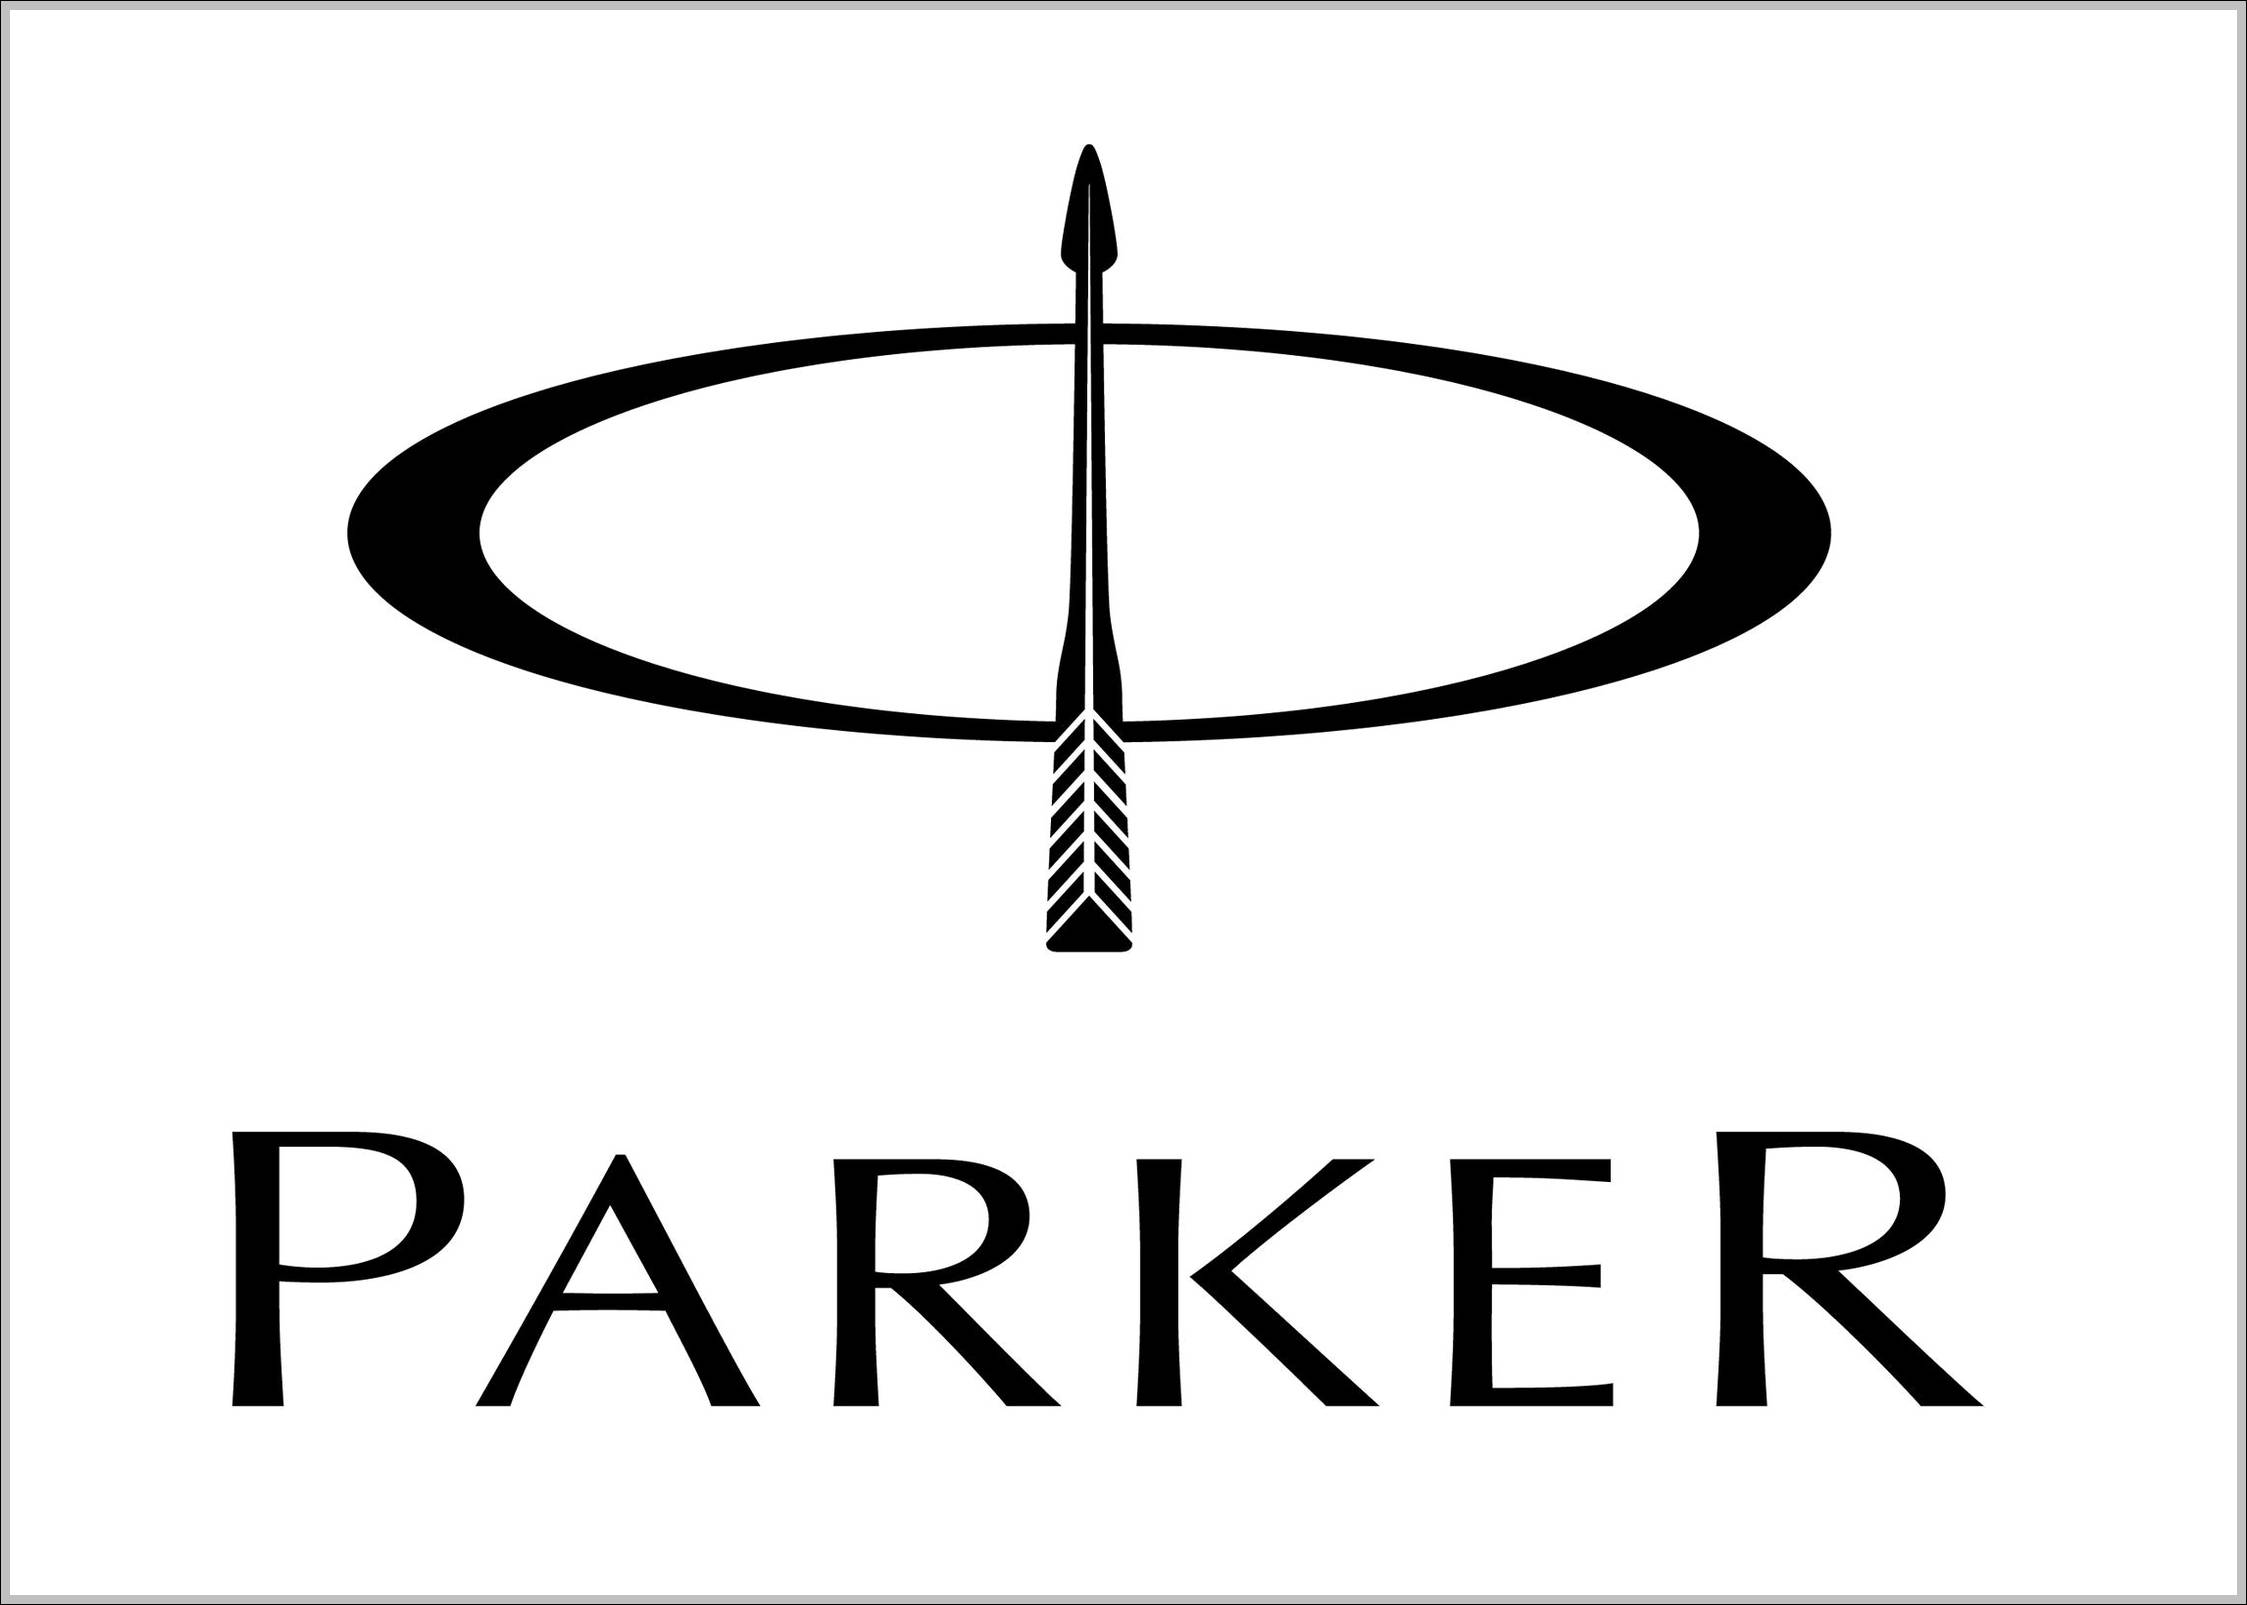 Parker logo new and original